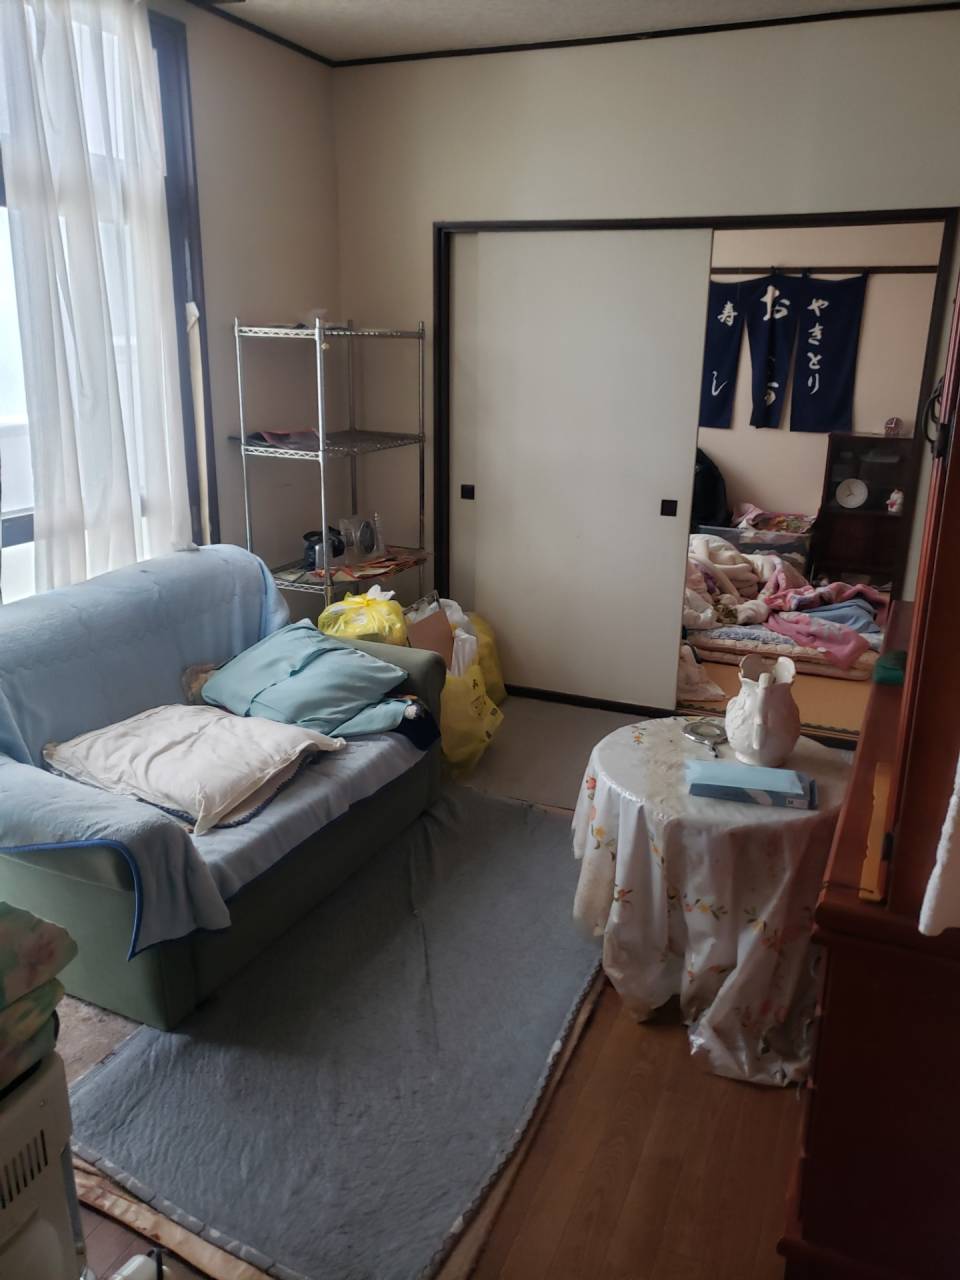 札幌市北区で生活保護受給者の家財搬出